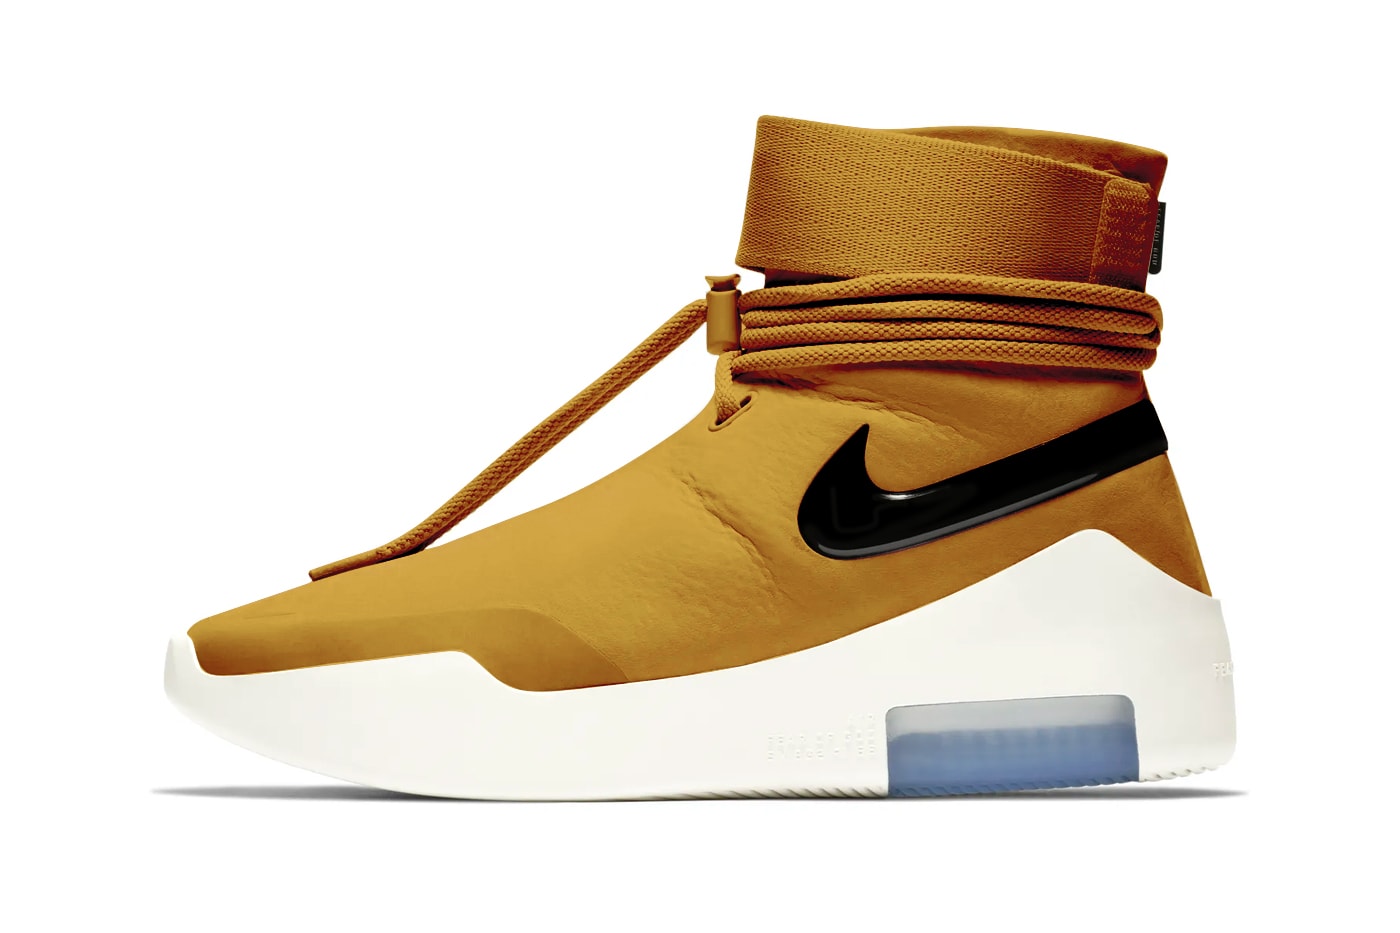 Nike Fear of God Collaboration Coloris Nouveaux Jaune Wheat